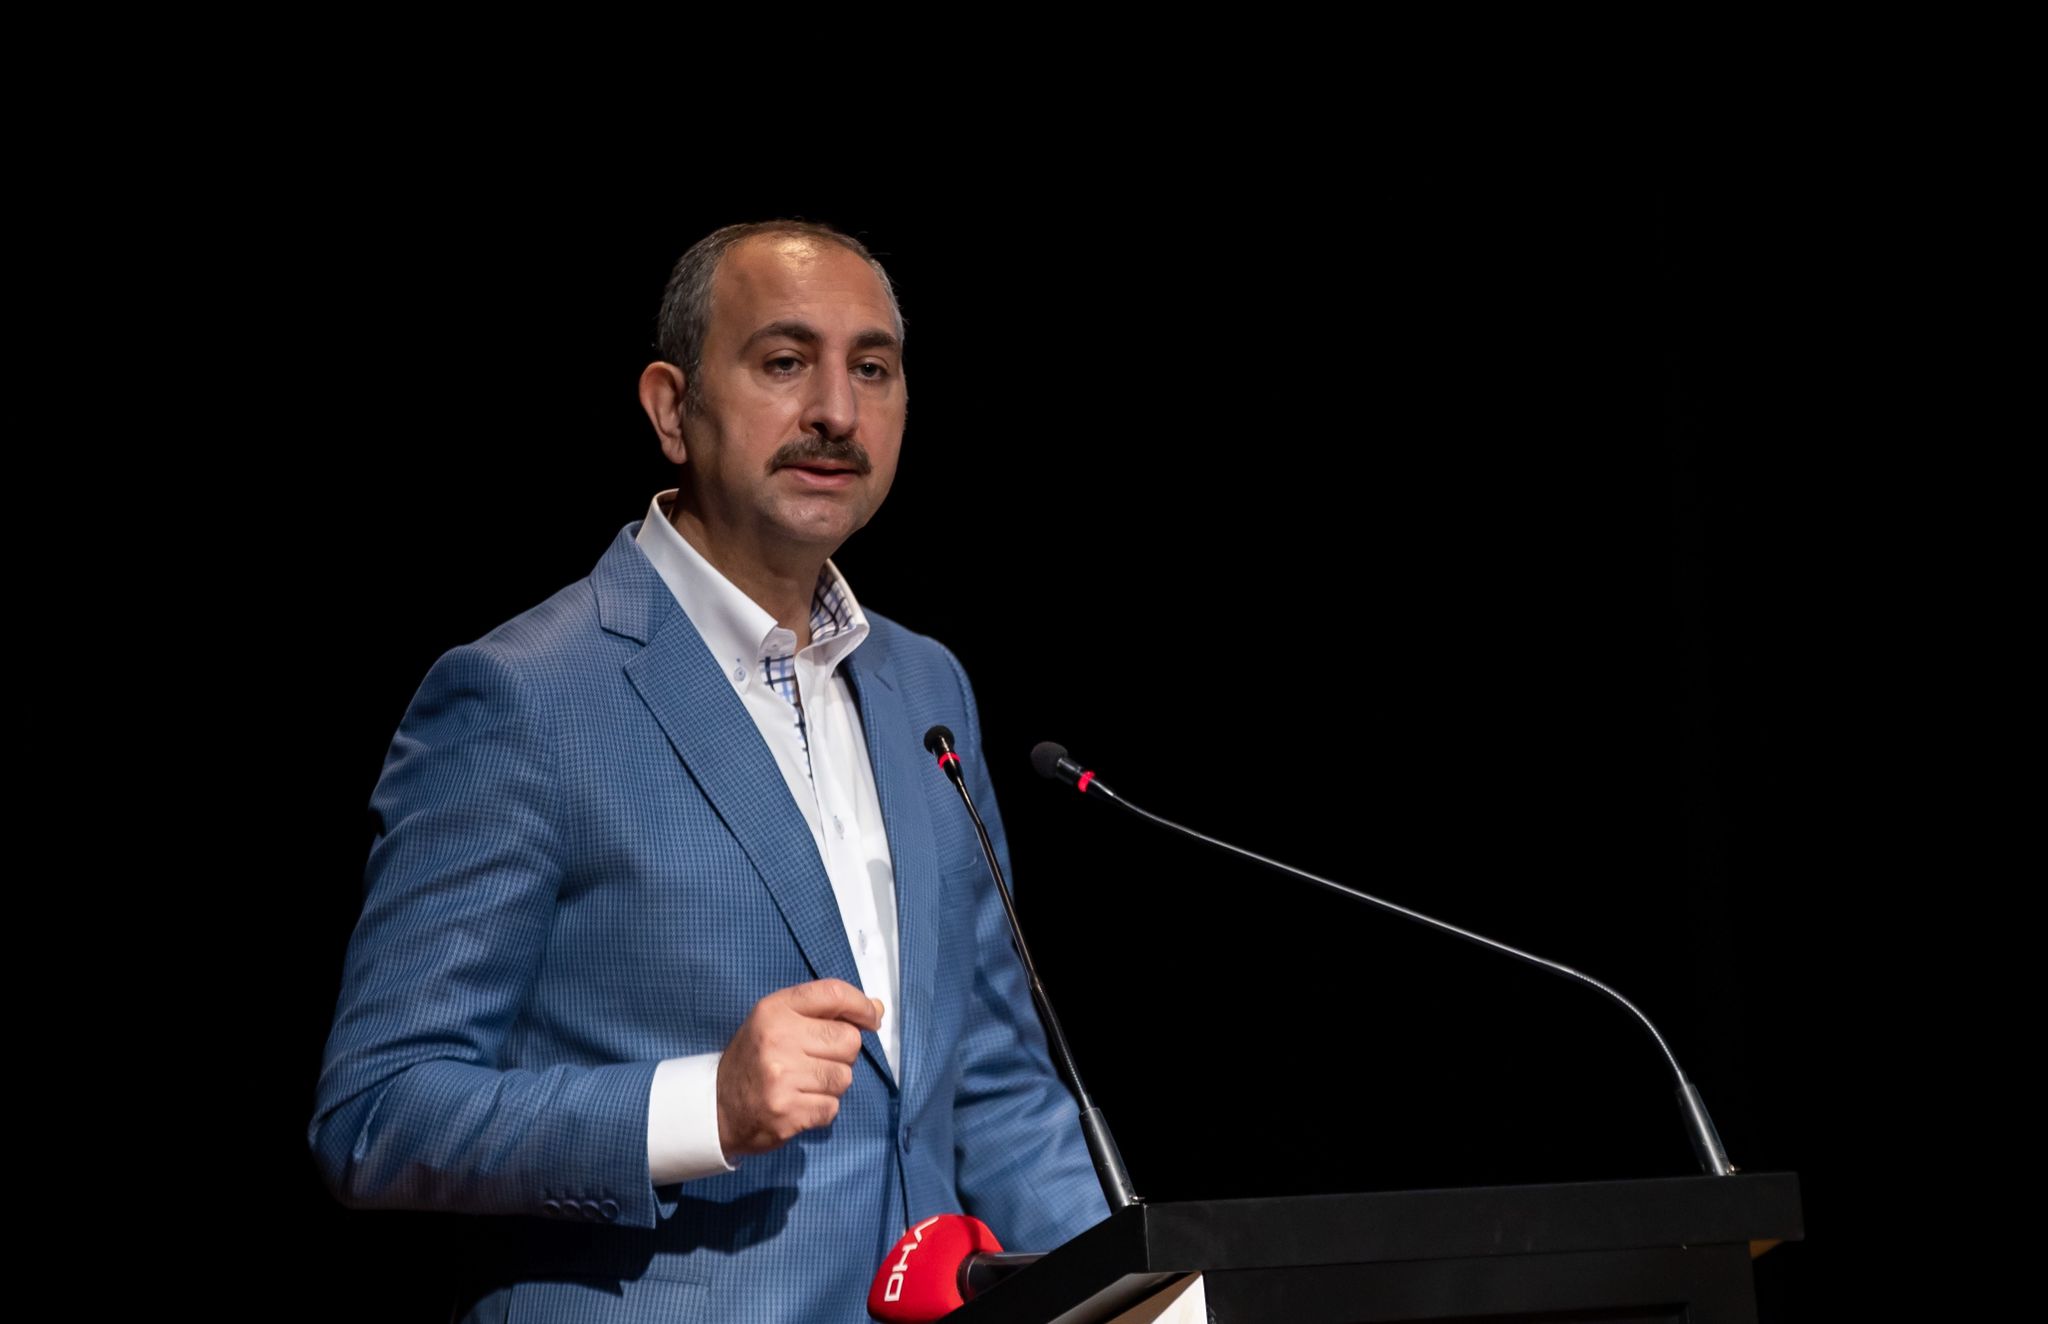 Adalet Bakanı Gül'den gençlere: "Kimsenin yaşam tarzınıza müdahale etmesine izin vermeyin"